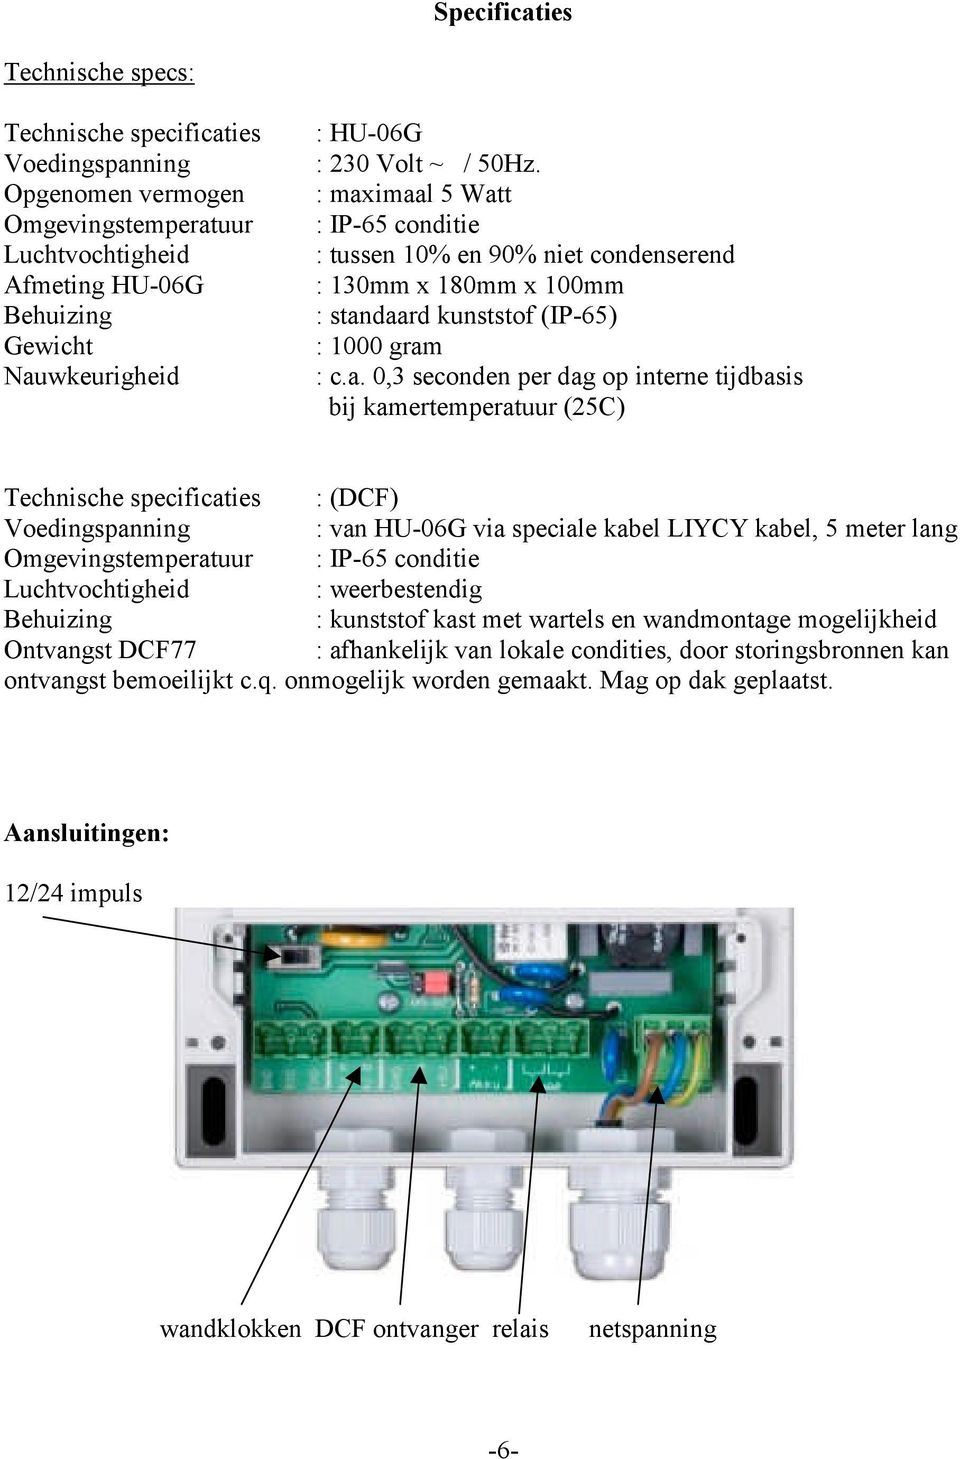 imaal 5 Watt : IP-65 conditie : tussen 10% en 90% niet condenserend : 130mm x 180mm x 100mm : standaard kunststof (IP-65) : 1000 gram : c.a. 0,3 seconden per dag op interne tijdbasis bij